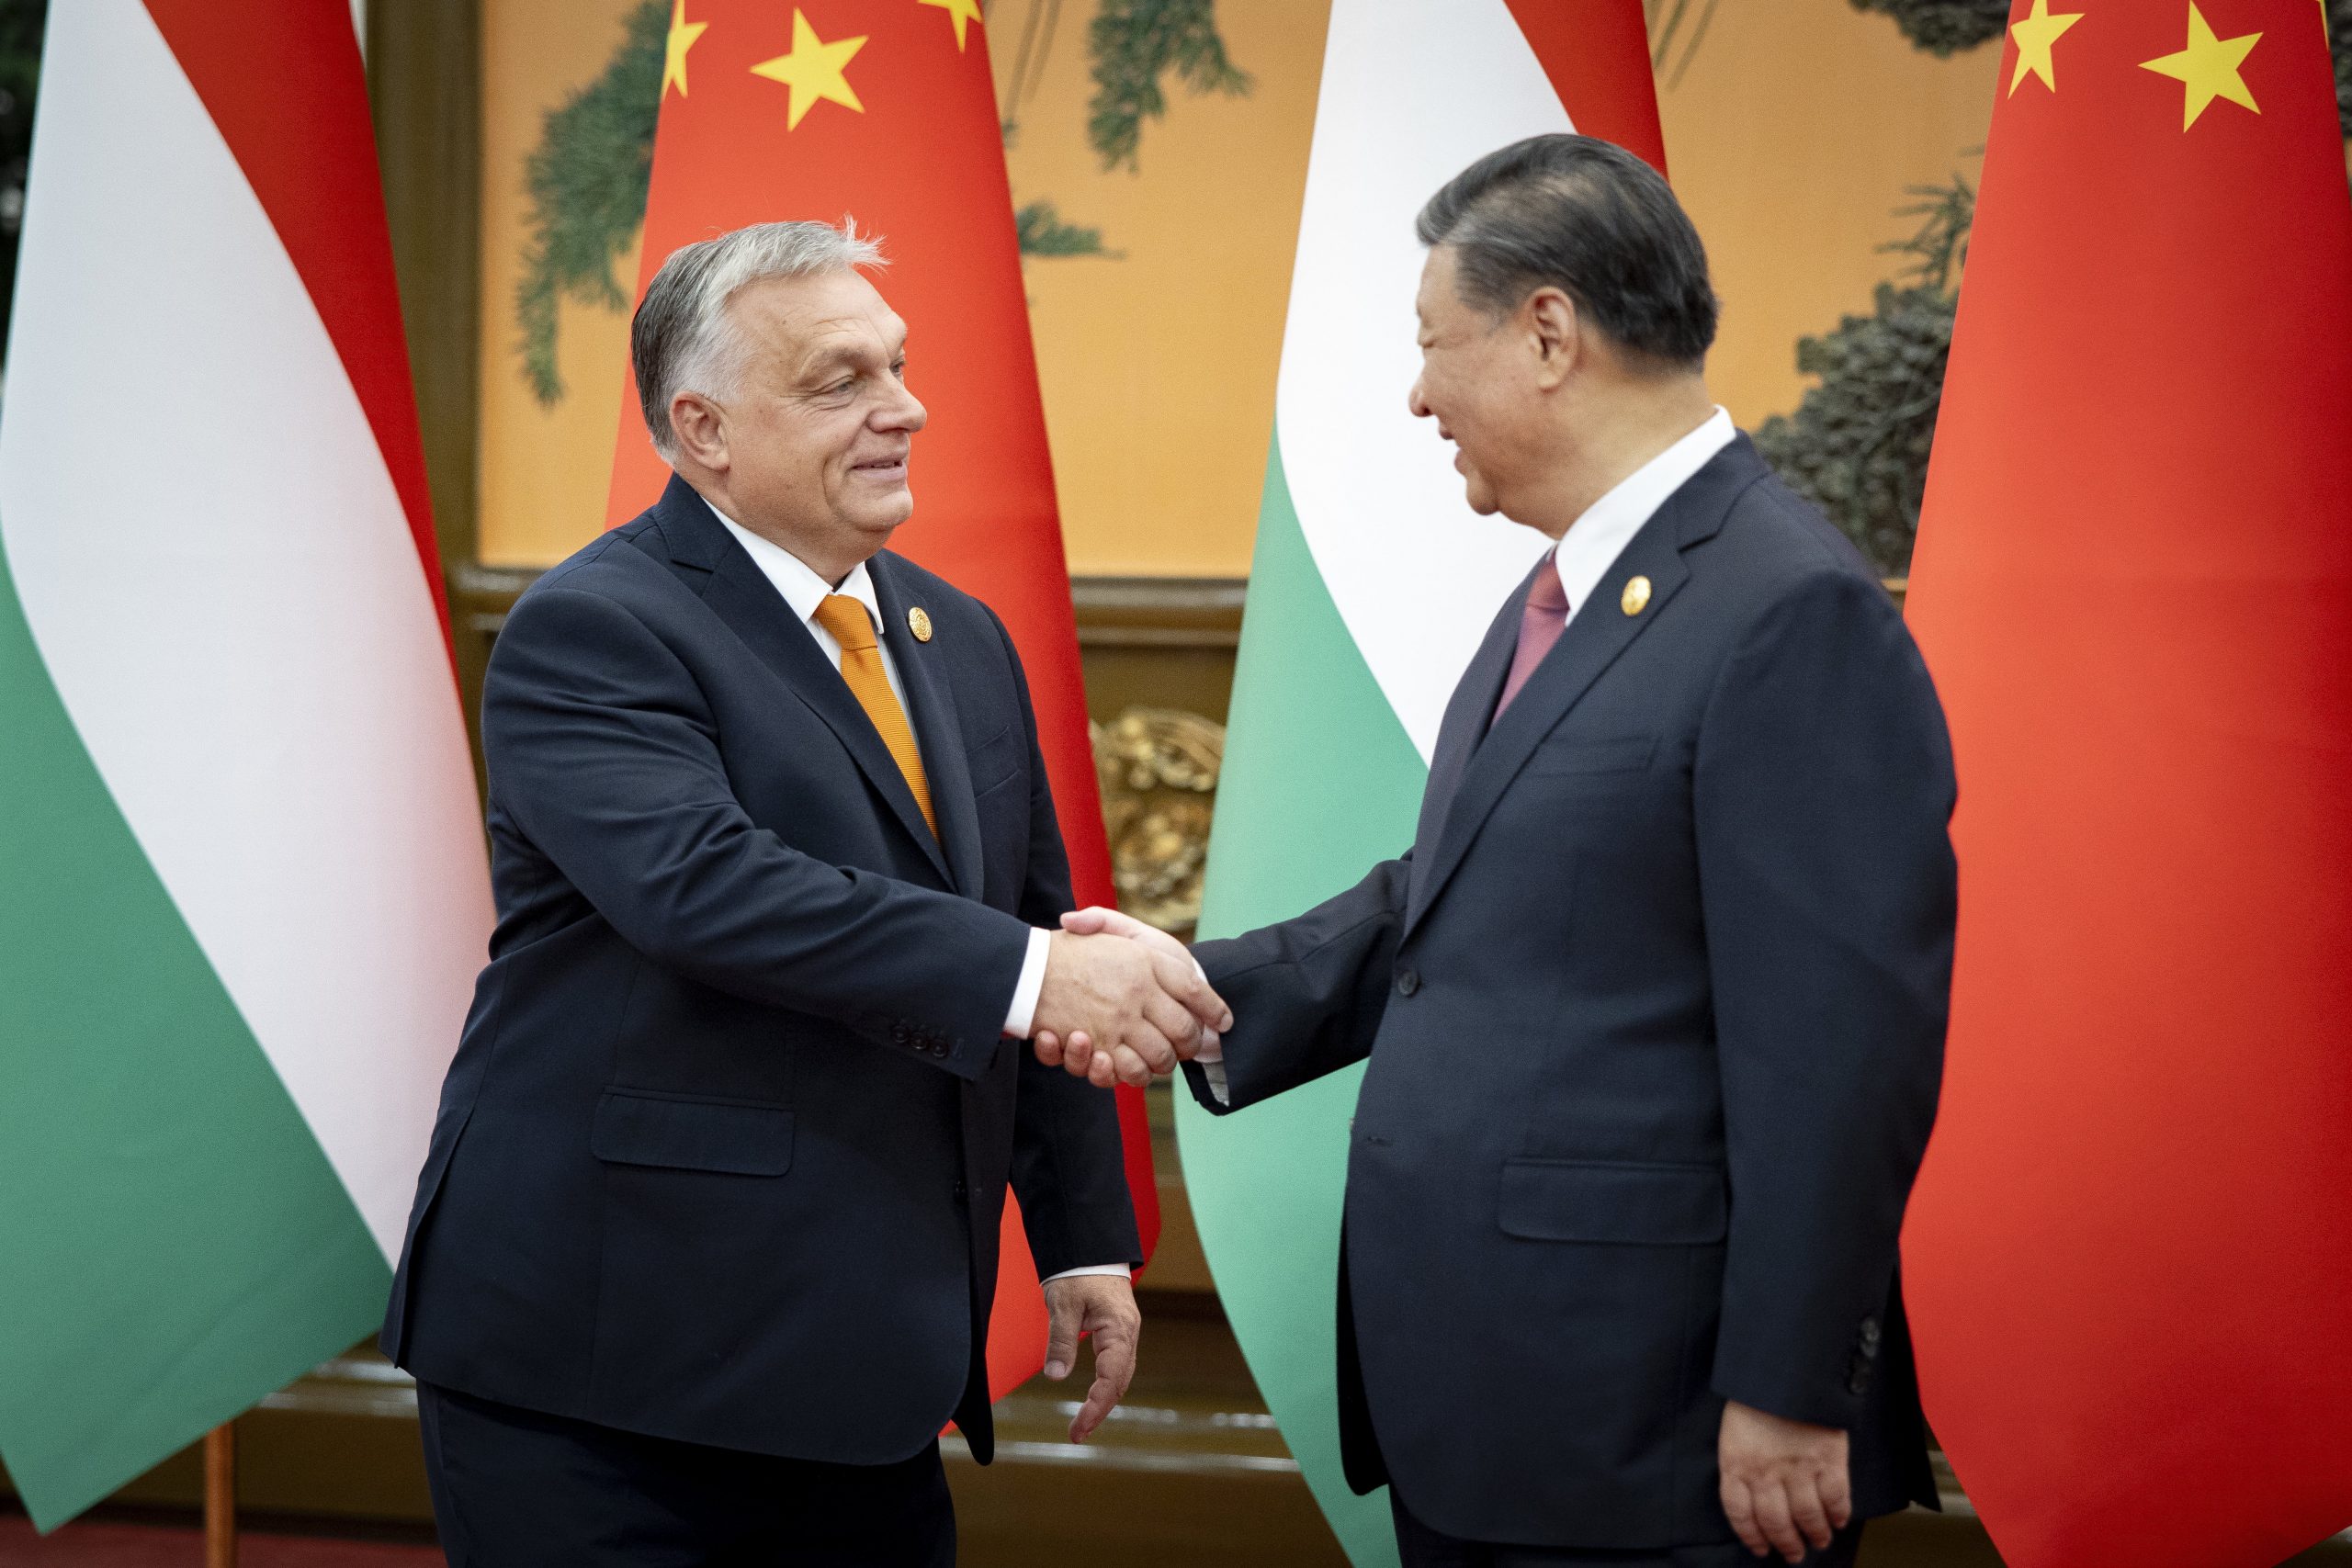 Viktor Orbán im Gespräch mit Xi Jinping